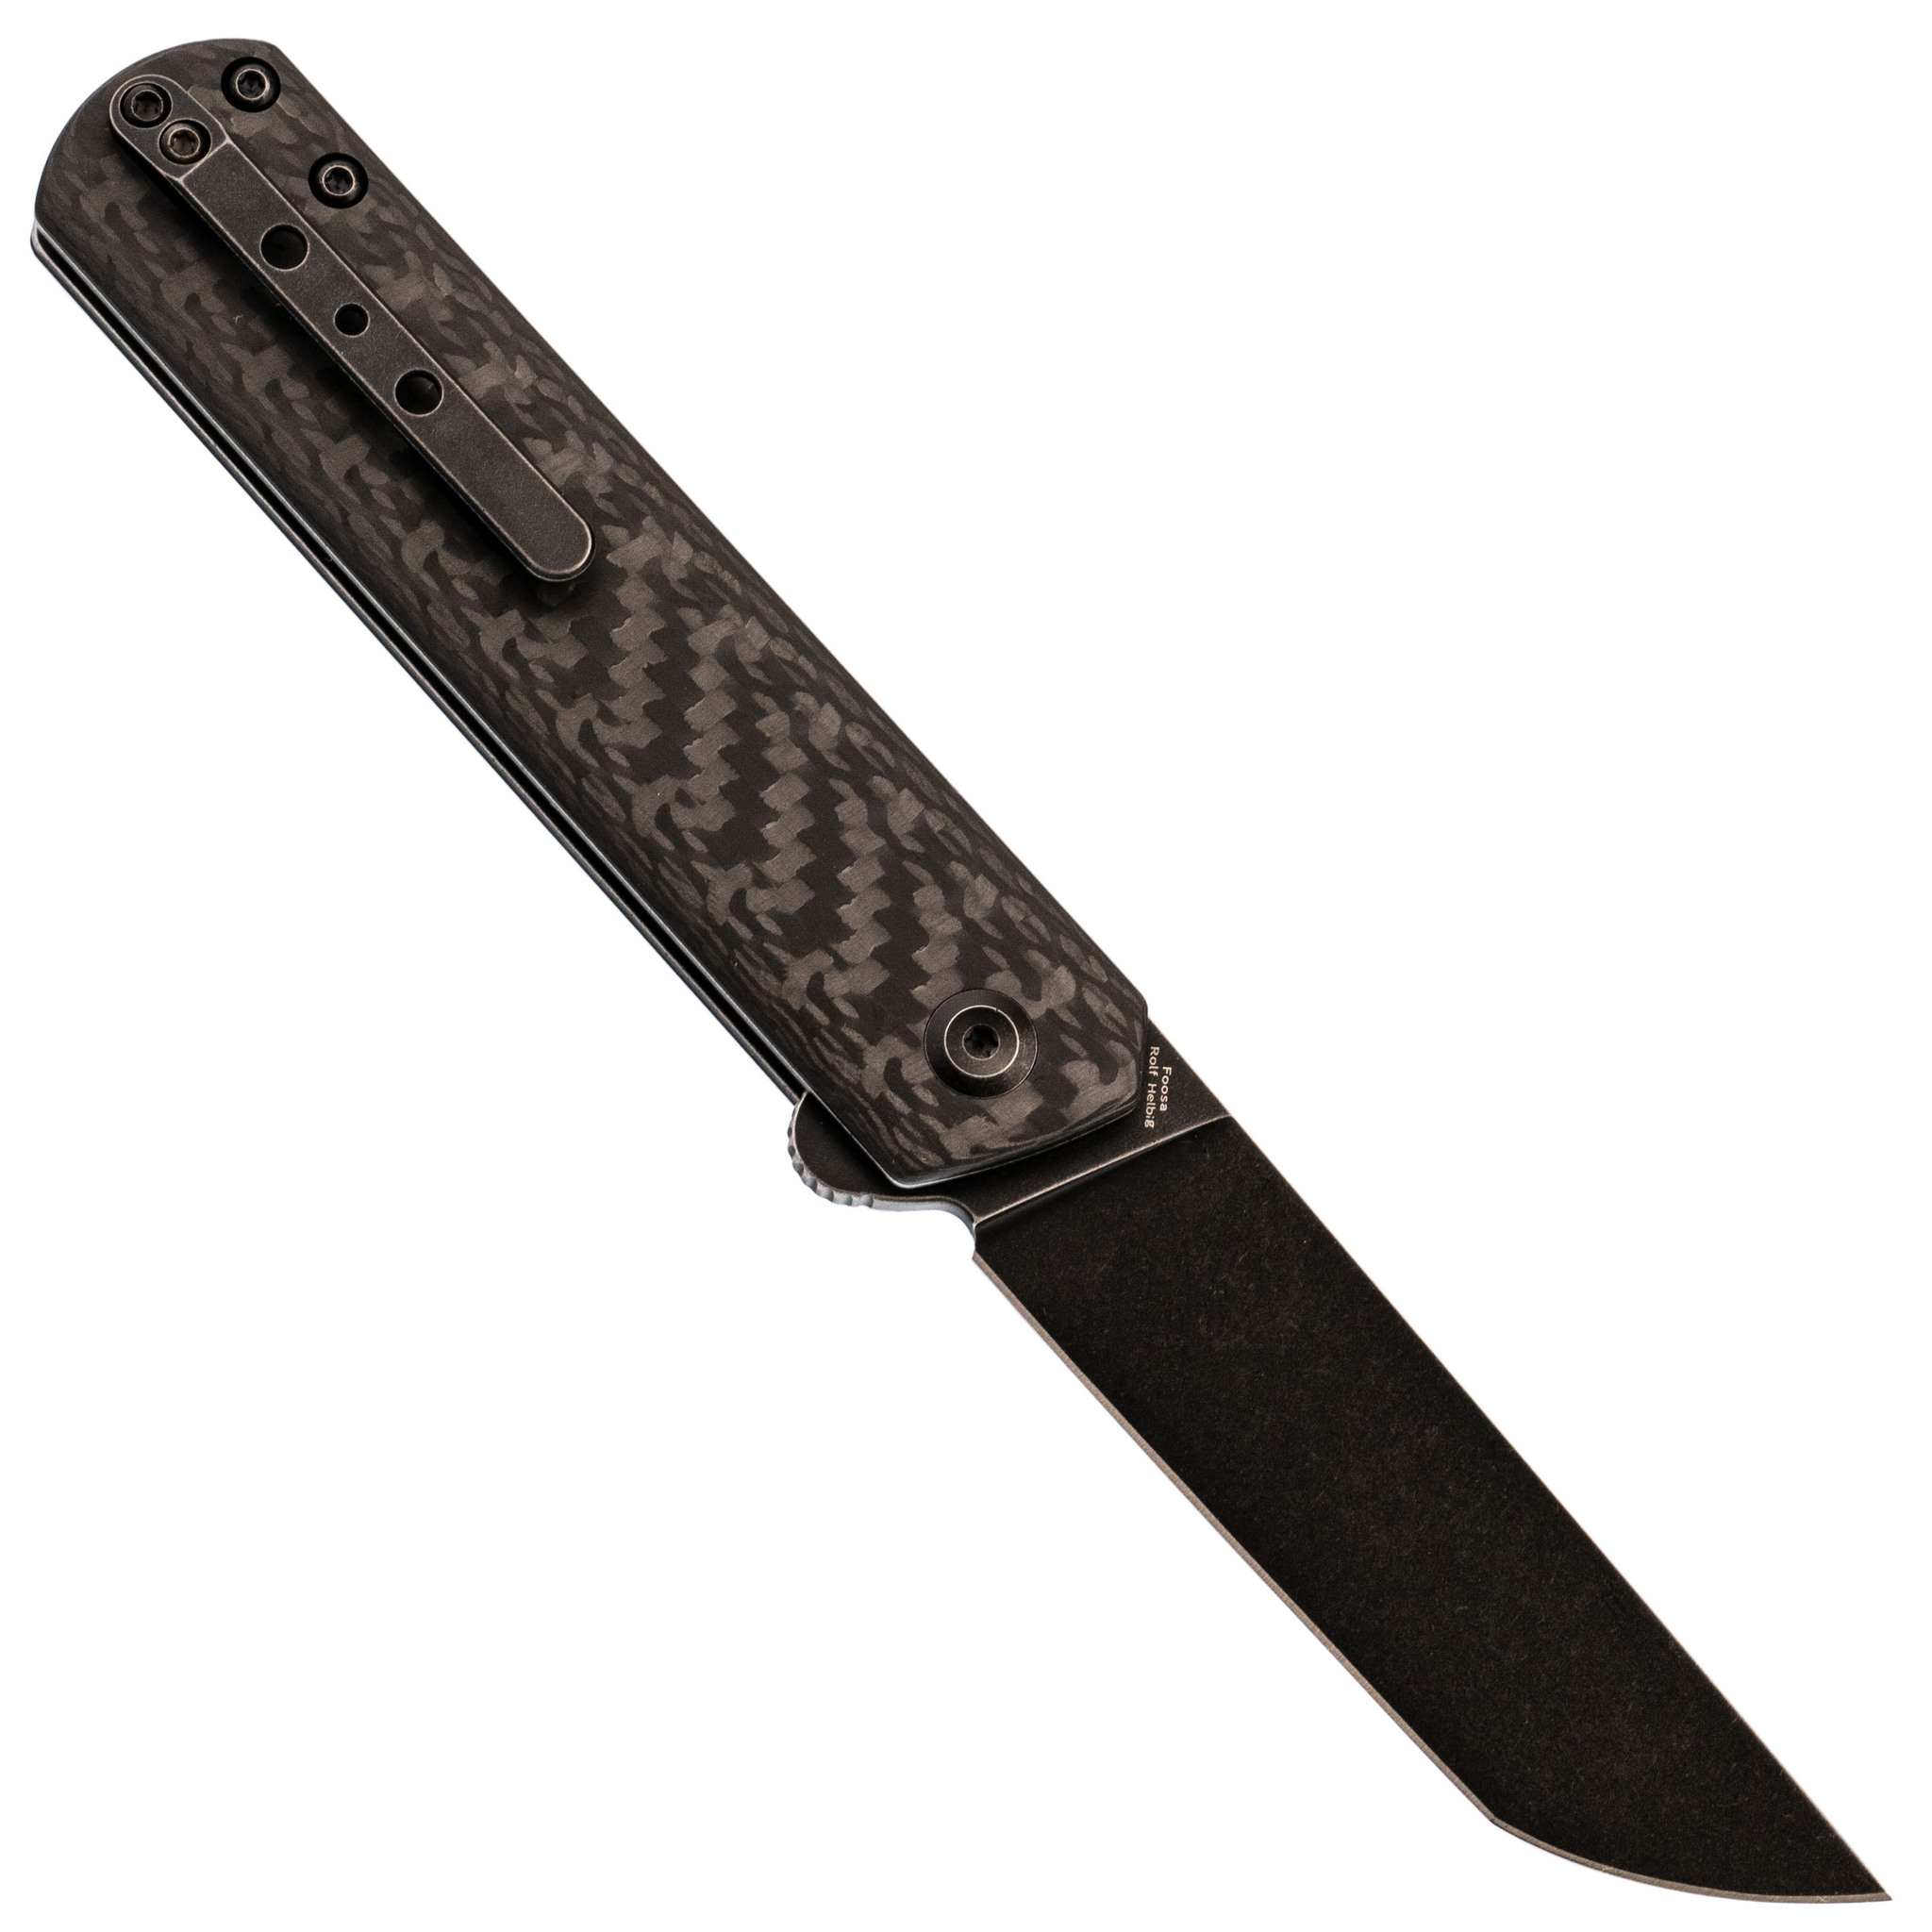 Складной нож Kansept knives Foosa, сталь 154CM, карбон - фото 3